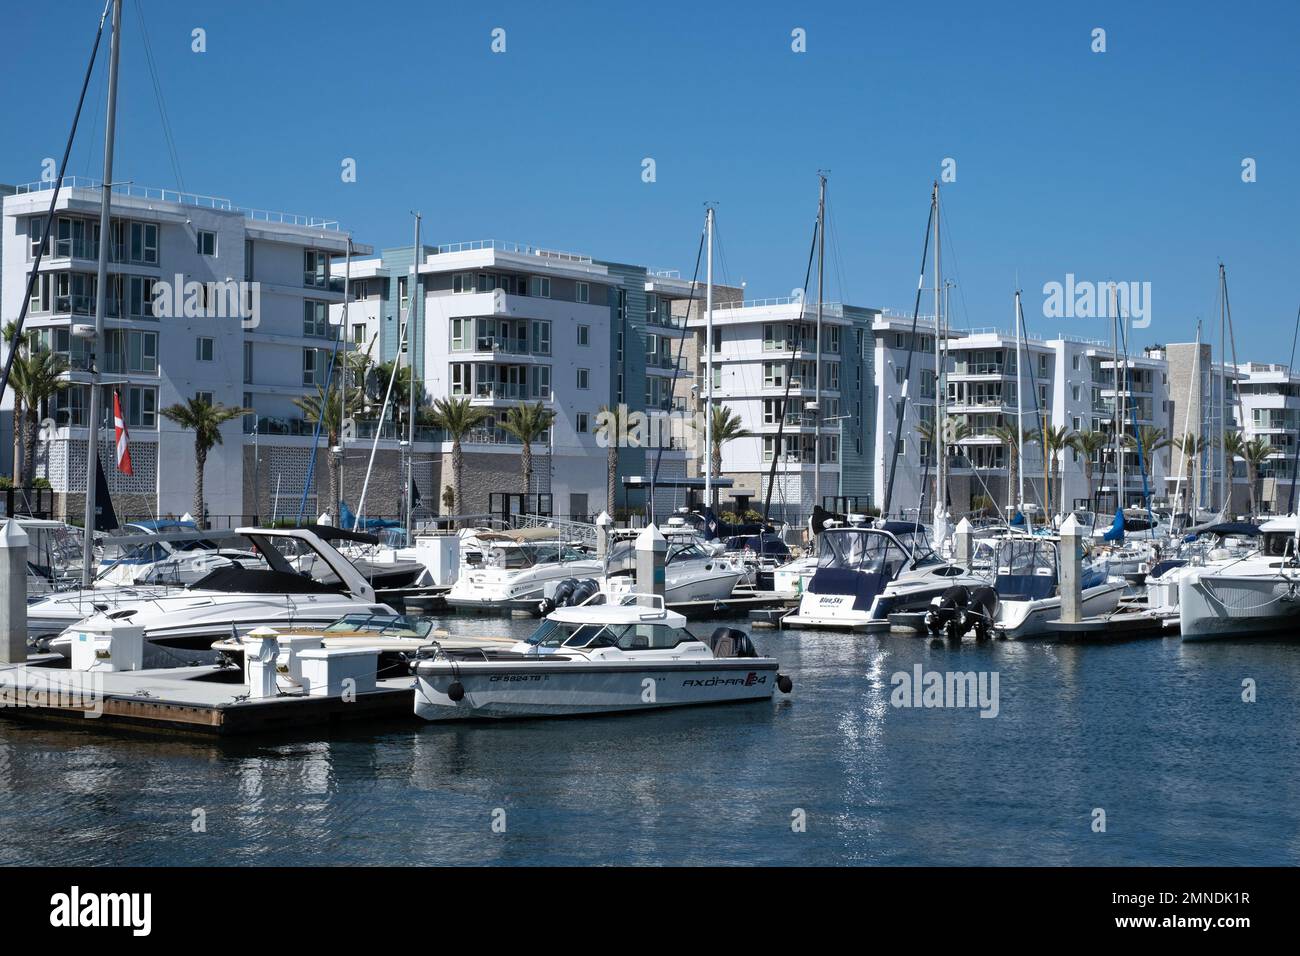 Boats in the marina at Marina Del Rey, California, USA. Stock Photo